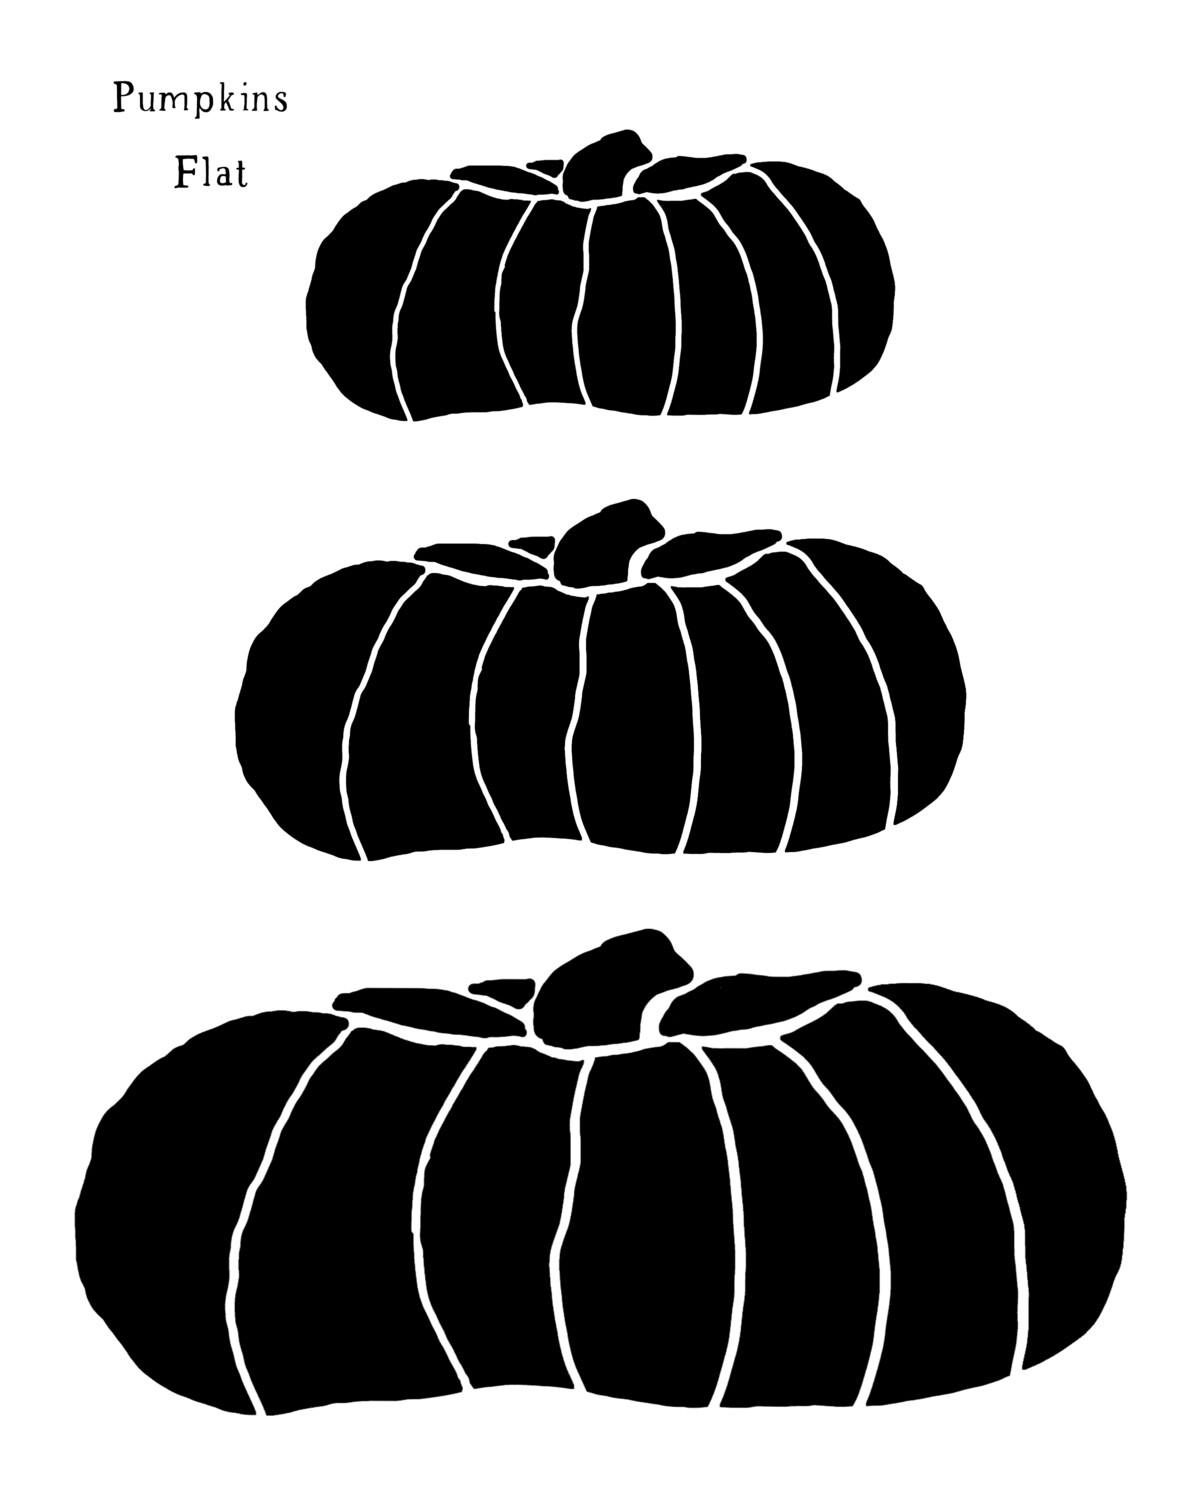 Pumpkins Flat stencil 8x10